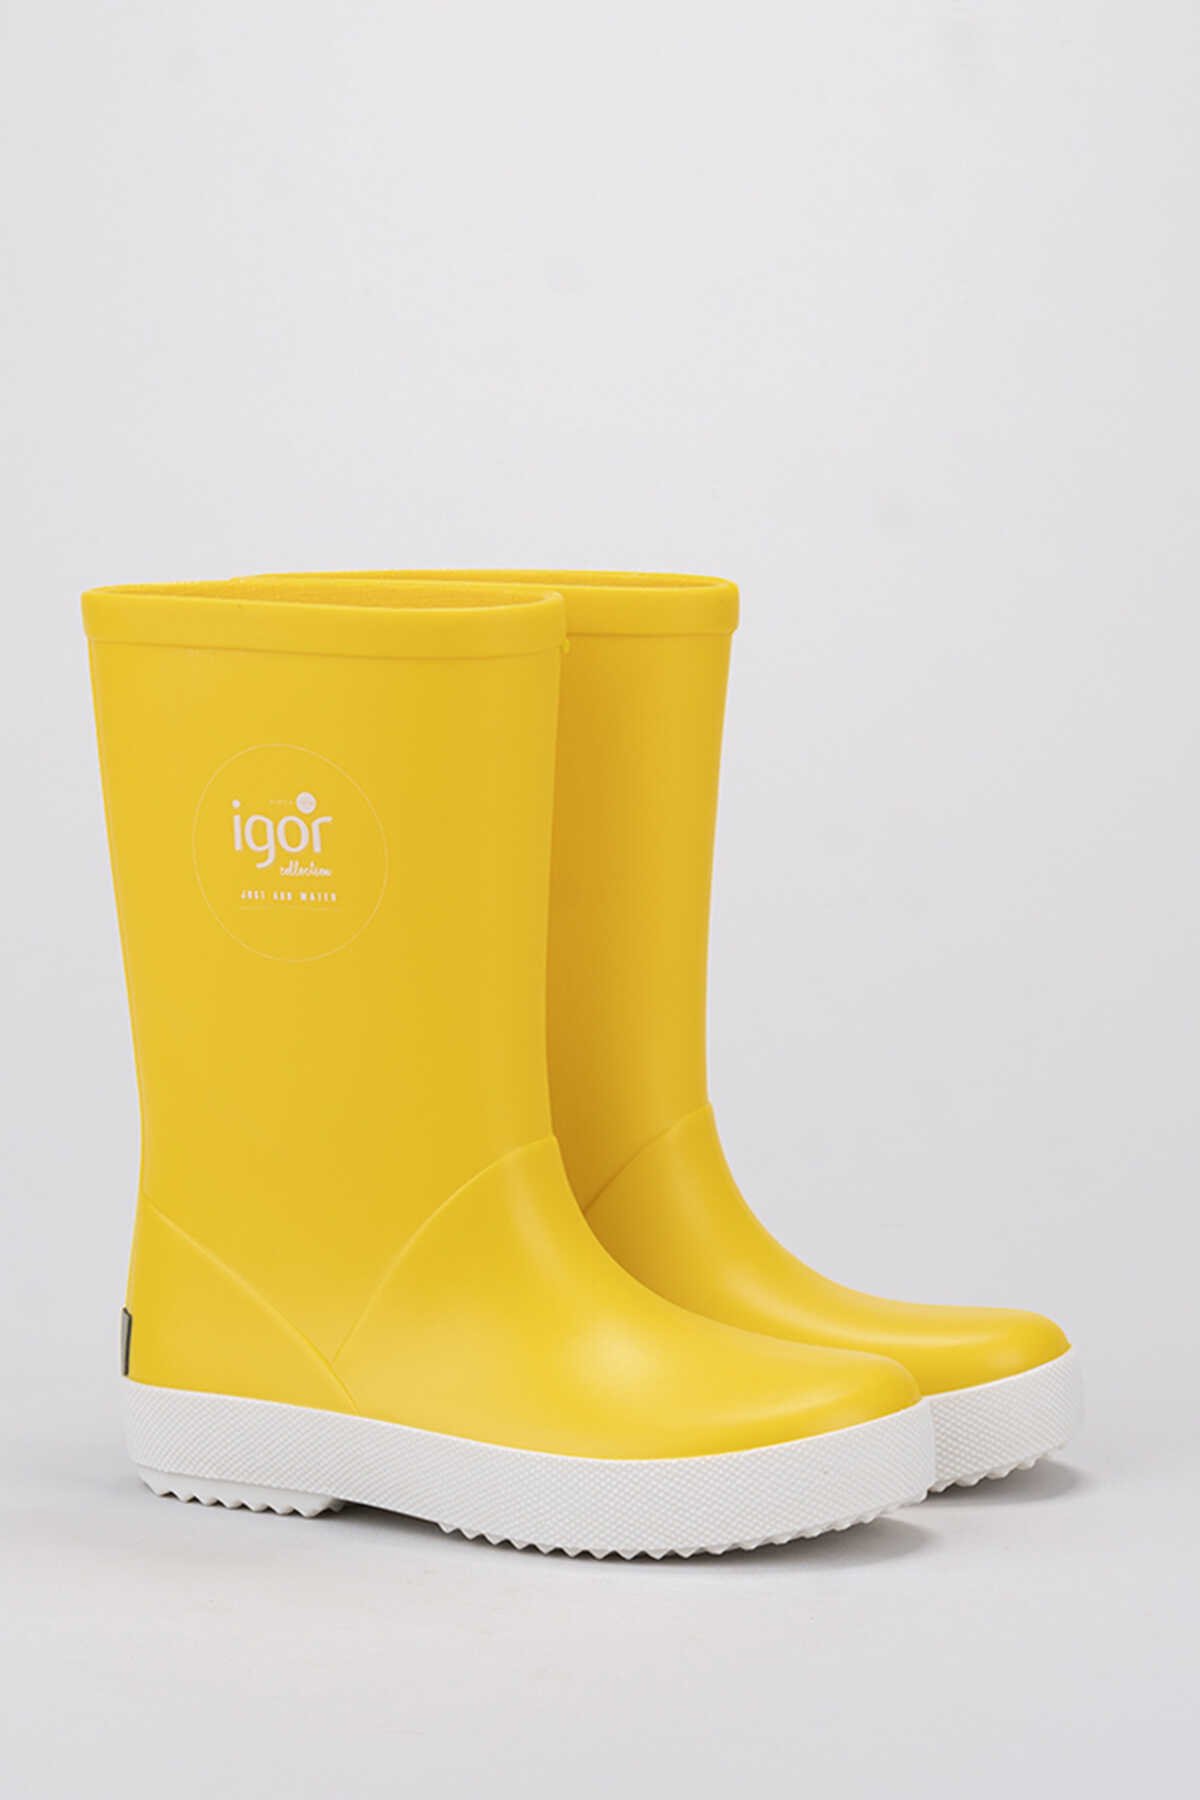 Igor - Igor SPLASH NAUTICO Yağmur Çizmesi Unisex Çocuk Ayakkabı Sarı